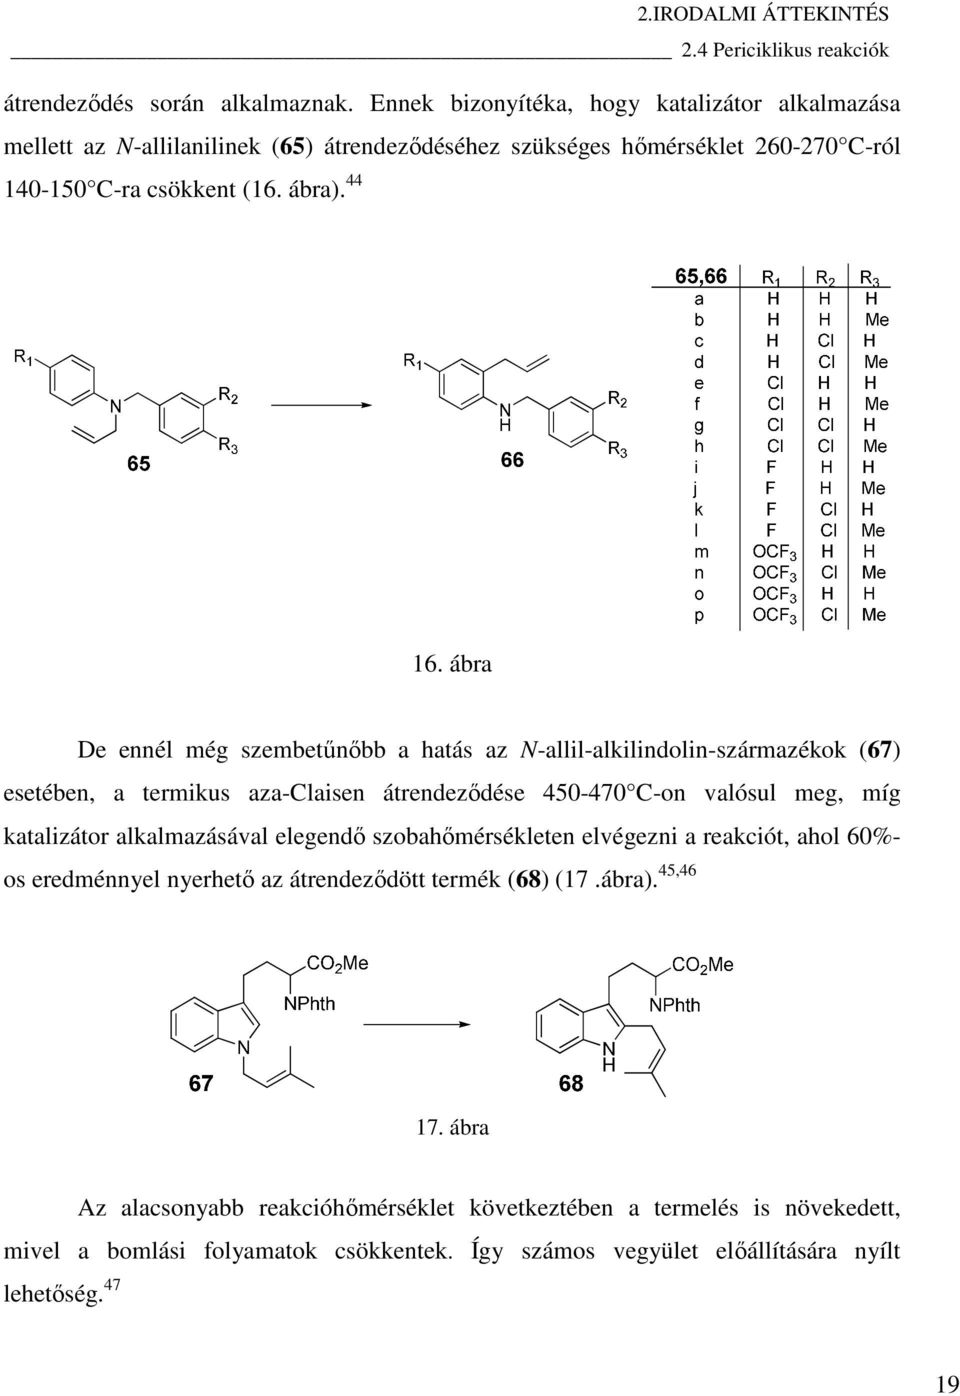 ábra De ennél még szembetűnőbb a hatás az N-allil-alkilindolin-származékok (67) esetében, a termikus aza-claisen átrendeződése 450-470 C-on valósul meg, míg katalizátor alkalmazásával